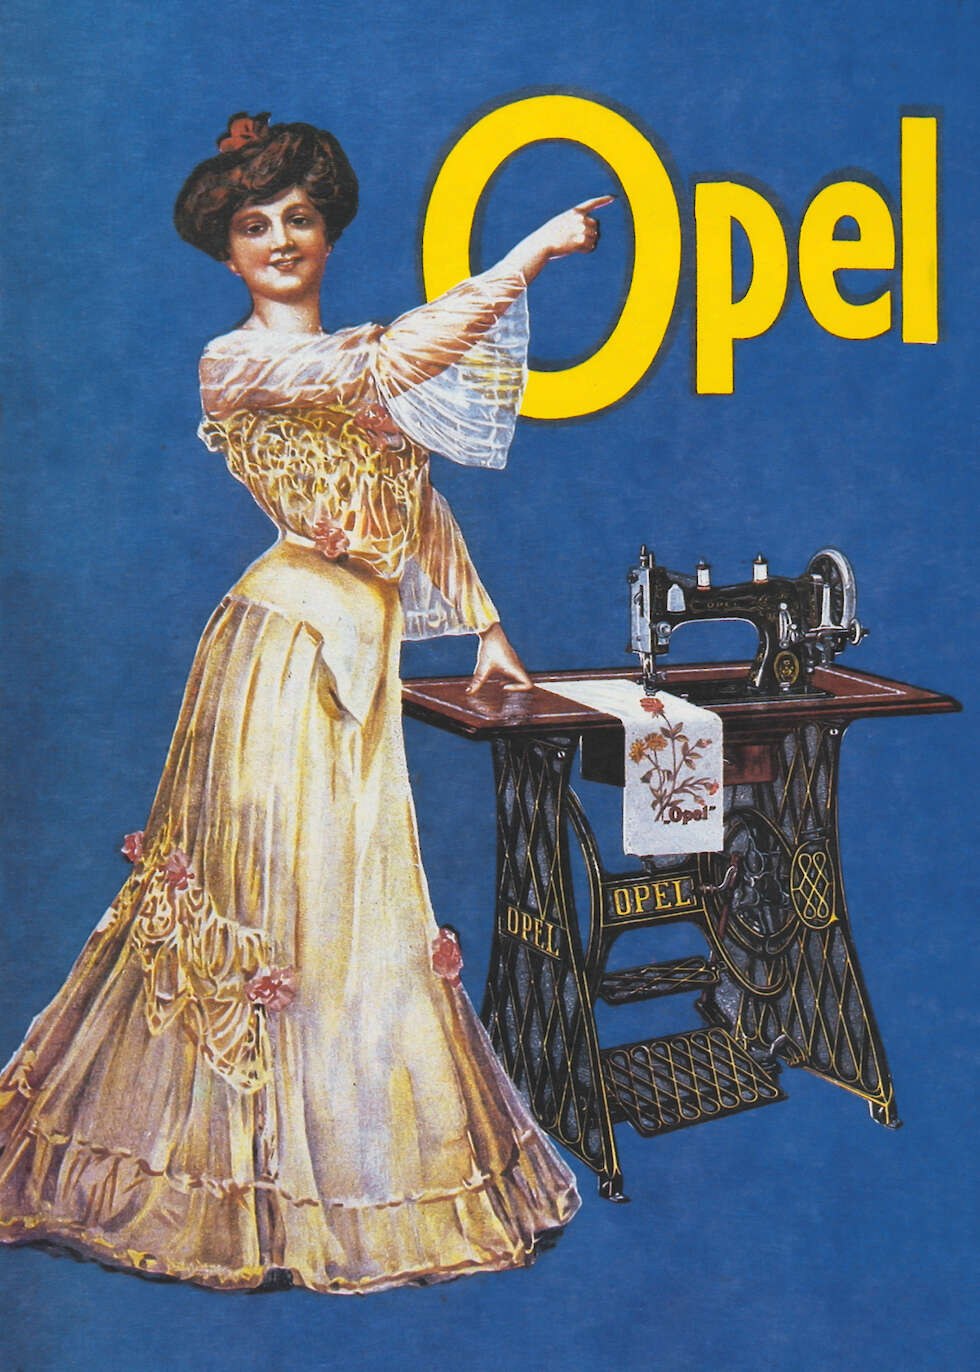 Ein altes Werbeplakat zeigt eine Frau vor einer Näh-Maschine. Sie zeigt auf den Namen "Opel", der oben auf dem Plakat steht.